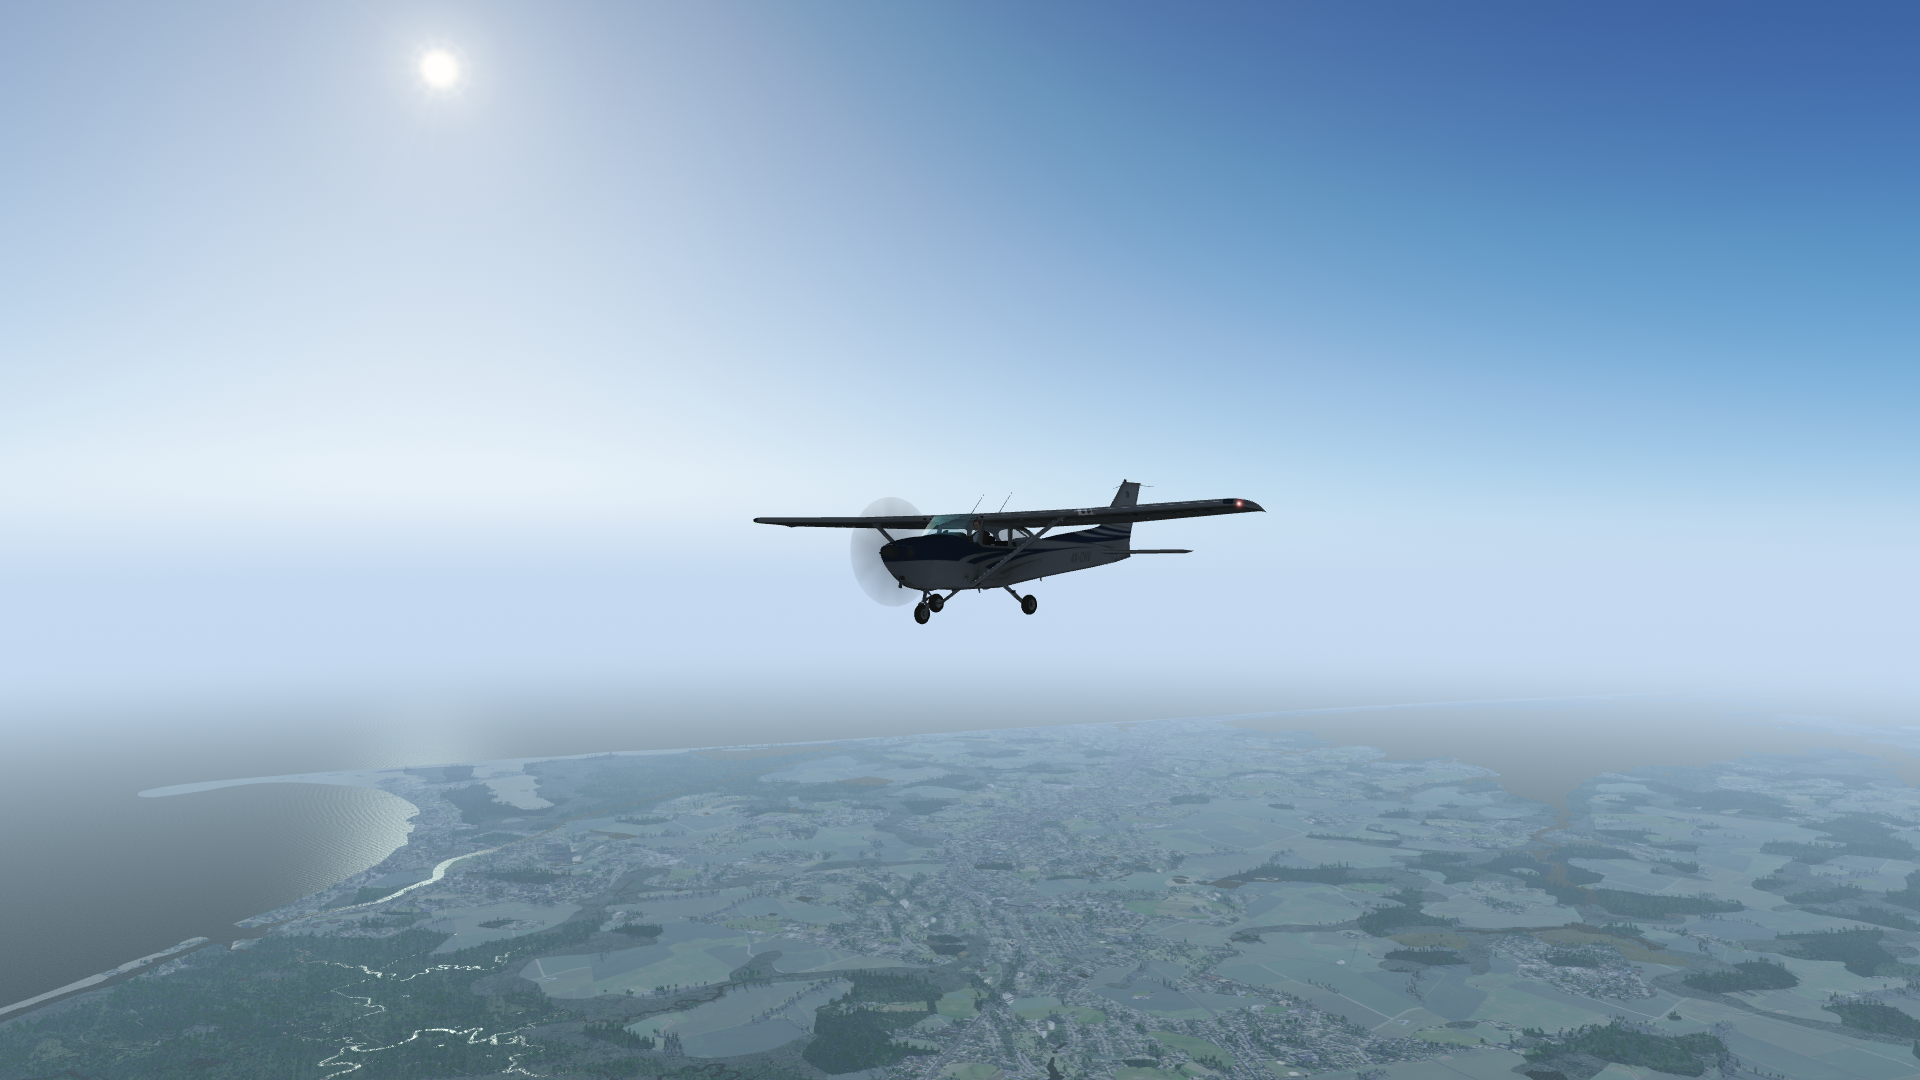 flightgear custom scenery